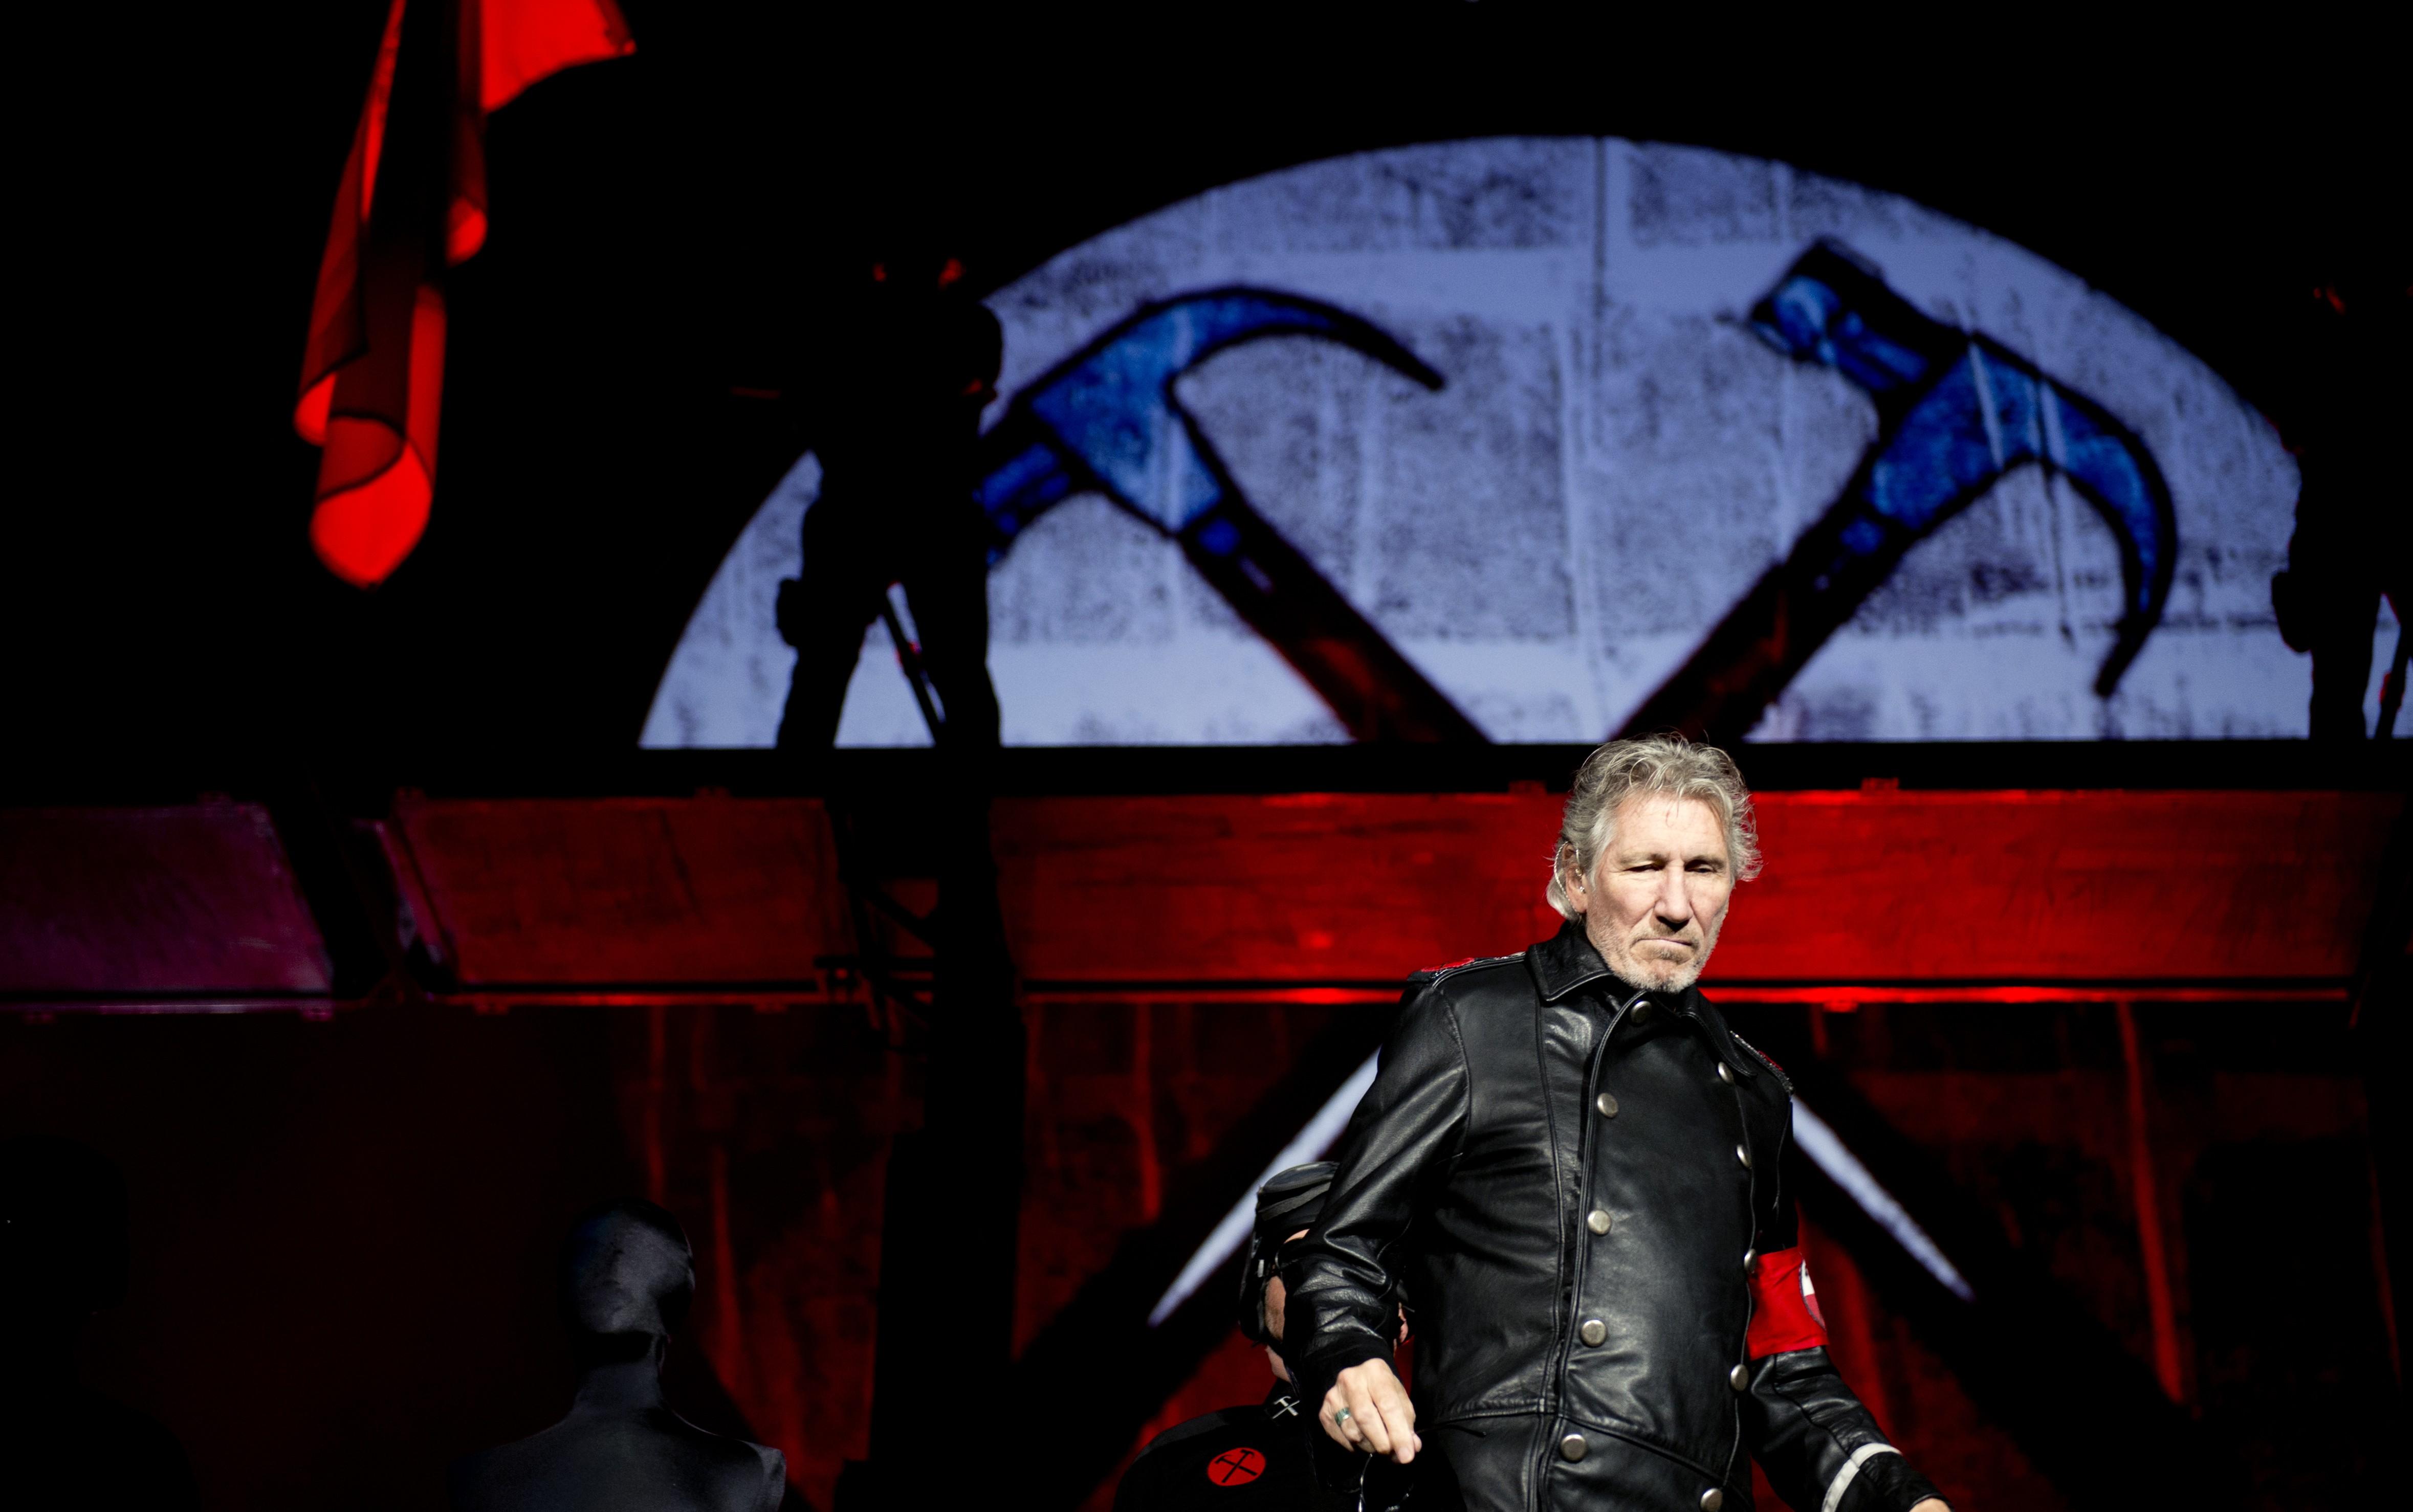 Sanse mari de ploaie la concertul lui Roger Waters